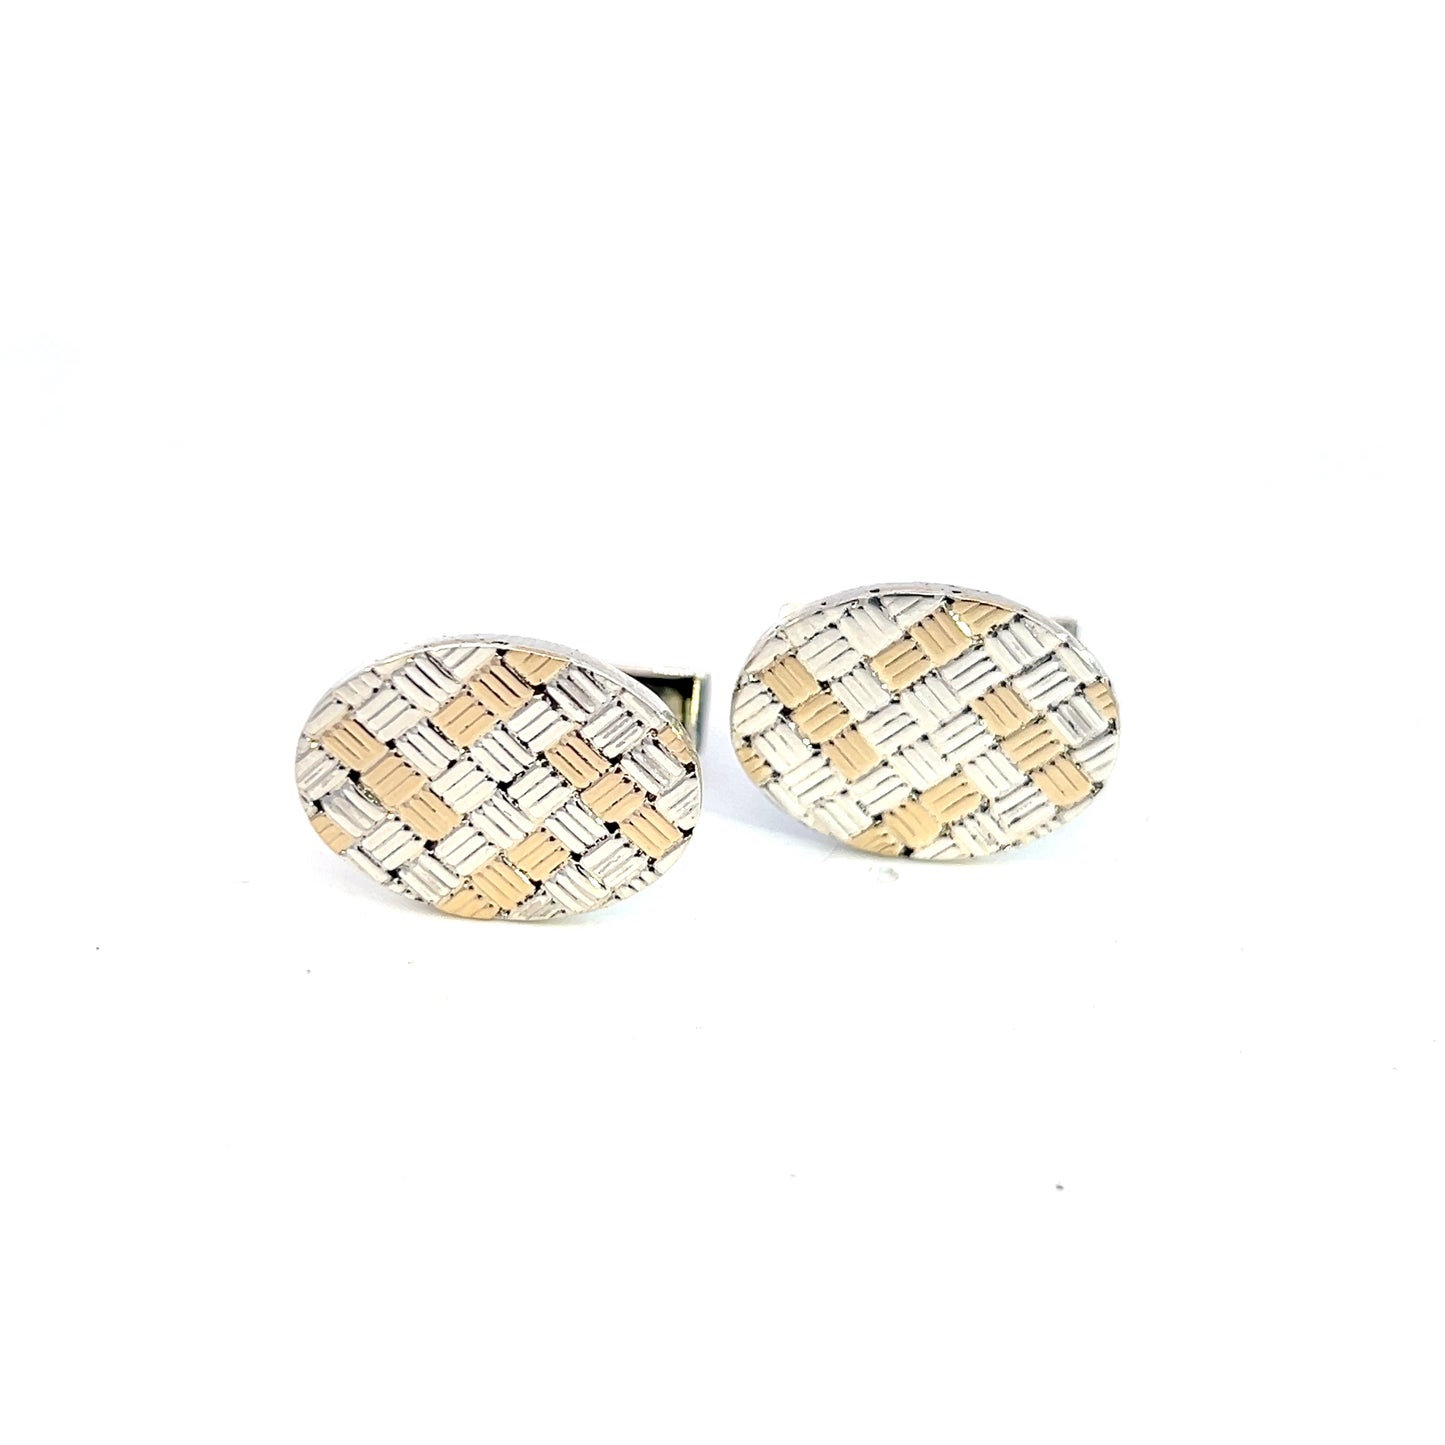 Tiffany & Co Estate Cufflinks 14k Gold Sterling Silver TIF621 - Certified Fine Jewelry